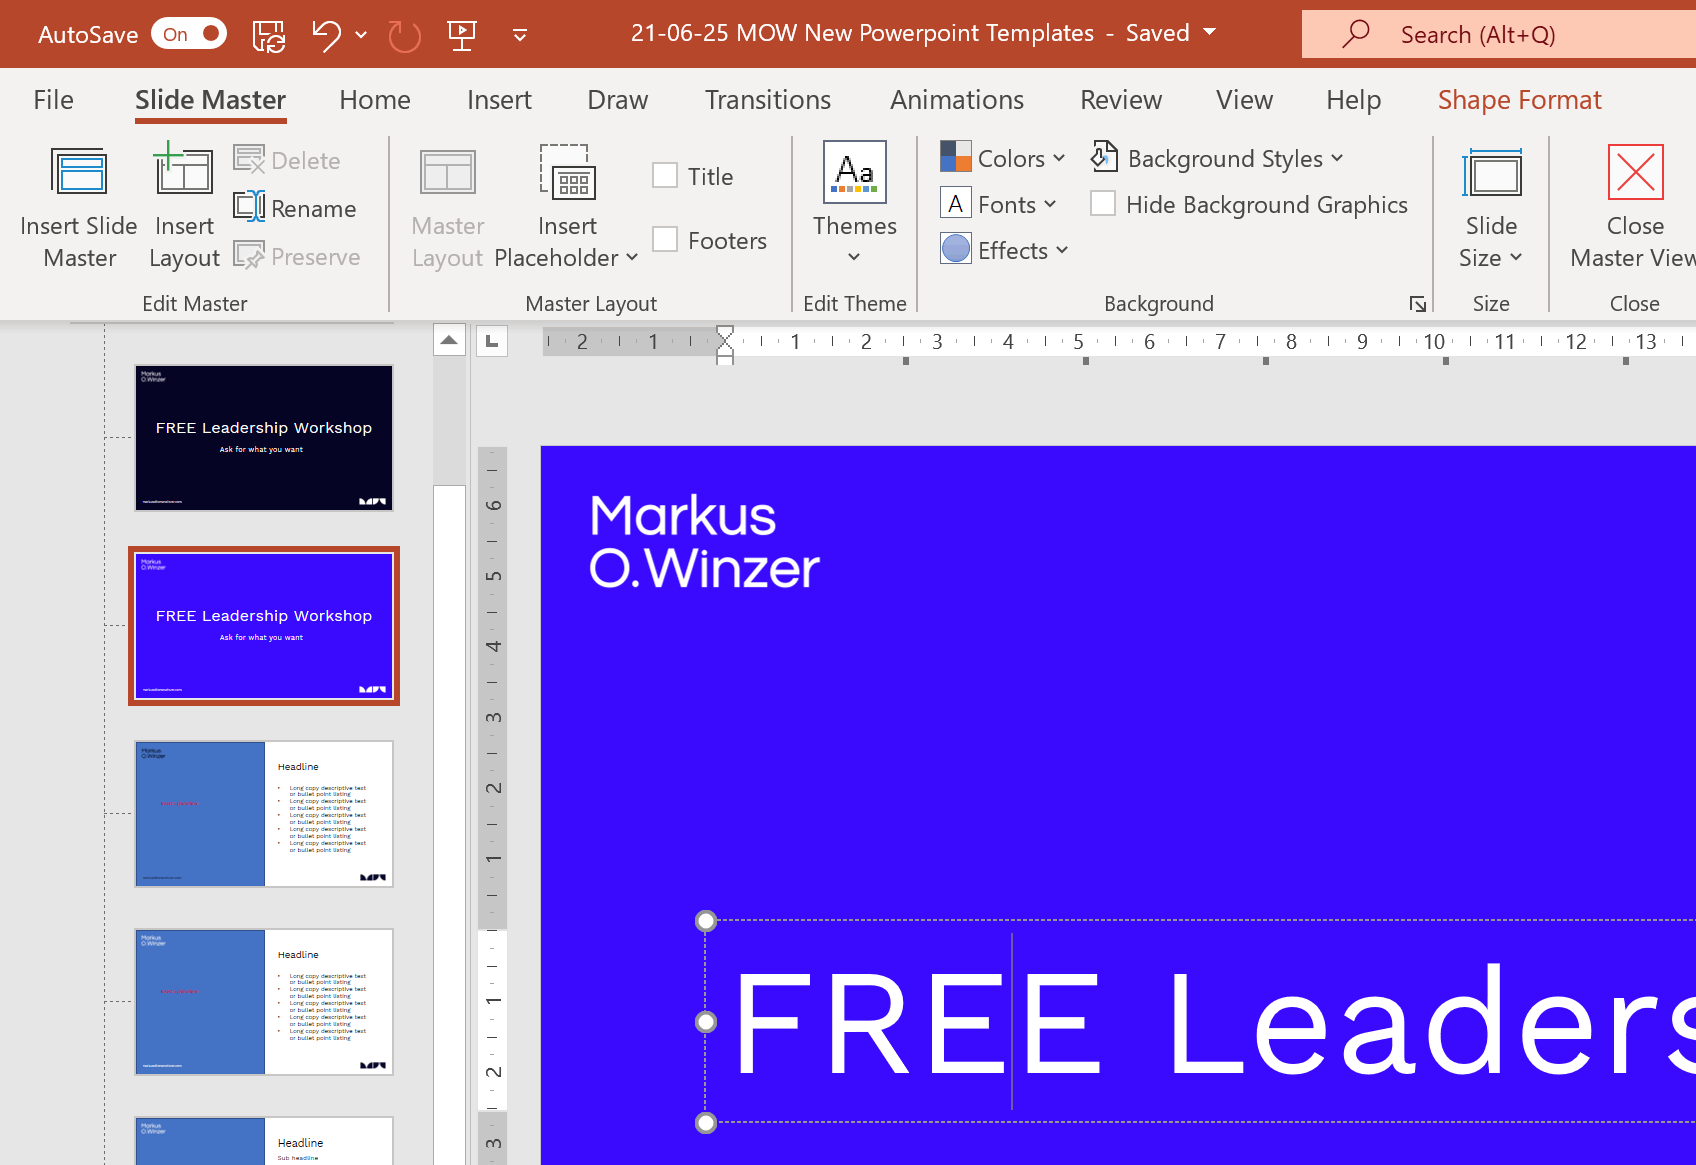 Dù không thể chỉnh sửa các slide nhưng bạn có thể tùy chỉnh trang bìa chủ đề trong Microsoft. Hãy xem hình ảnh liên quan để biết cách thực hiện.